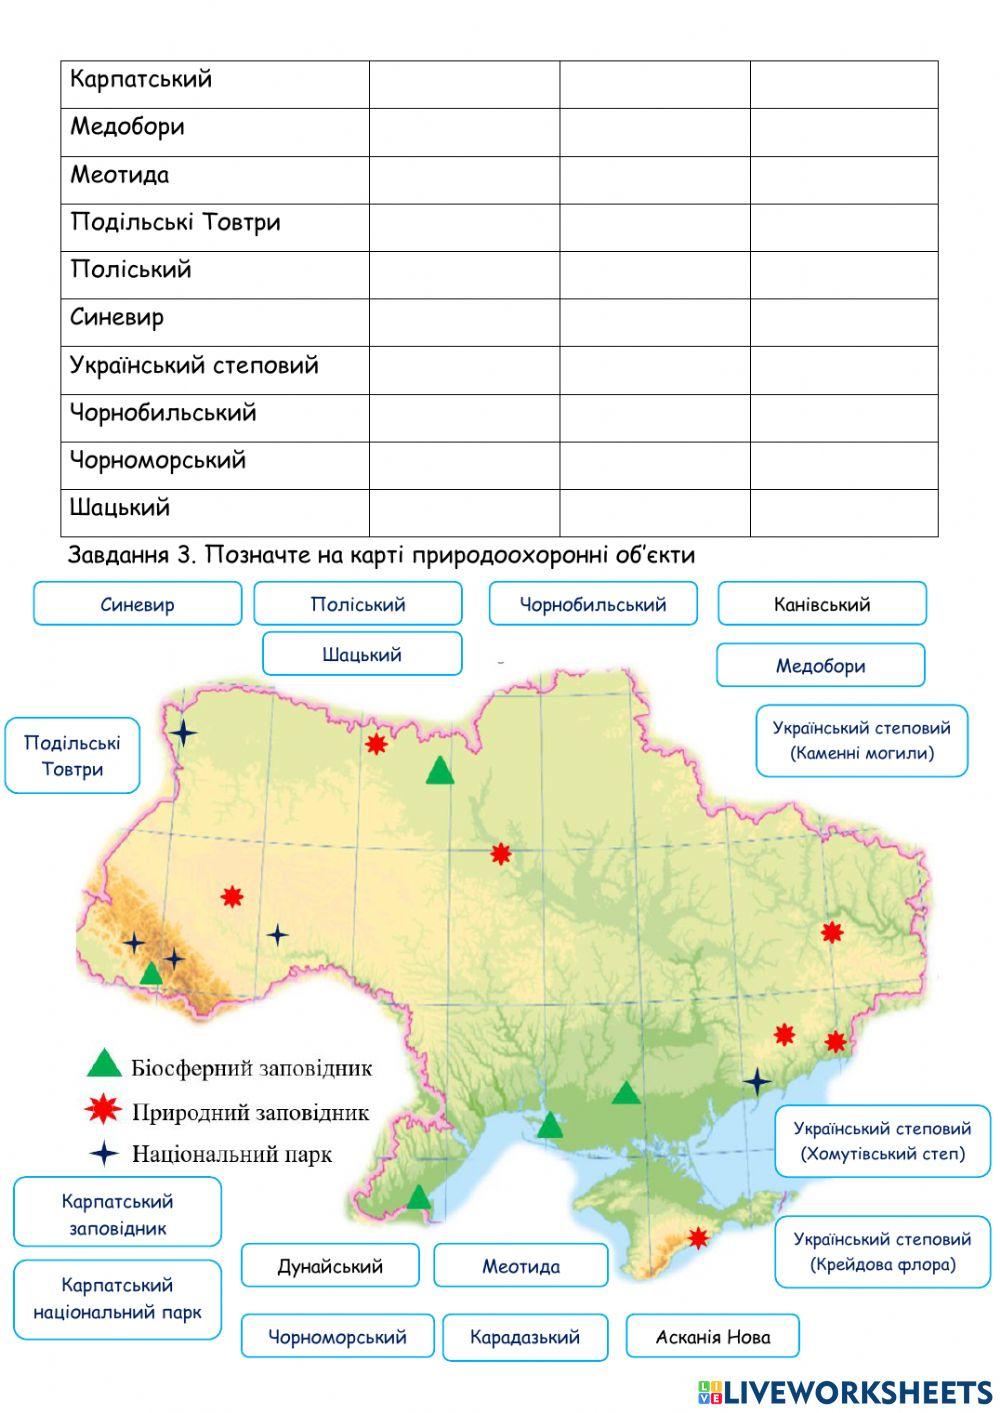 Практична робота №10. Позначення на контурній карті об’єктів природно-заповідного фонду України